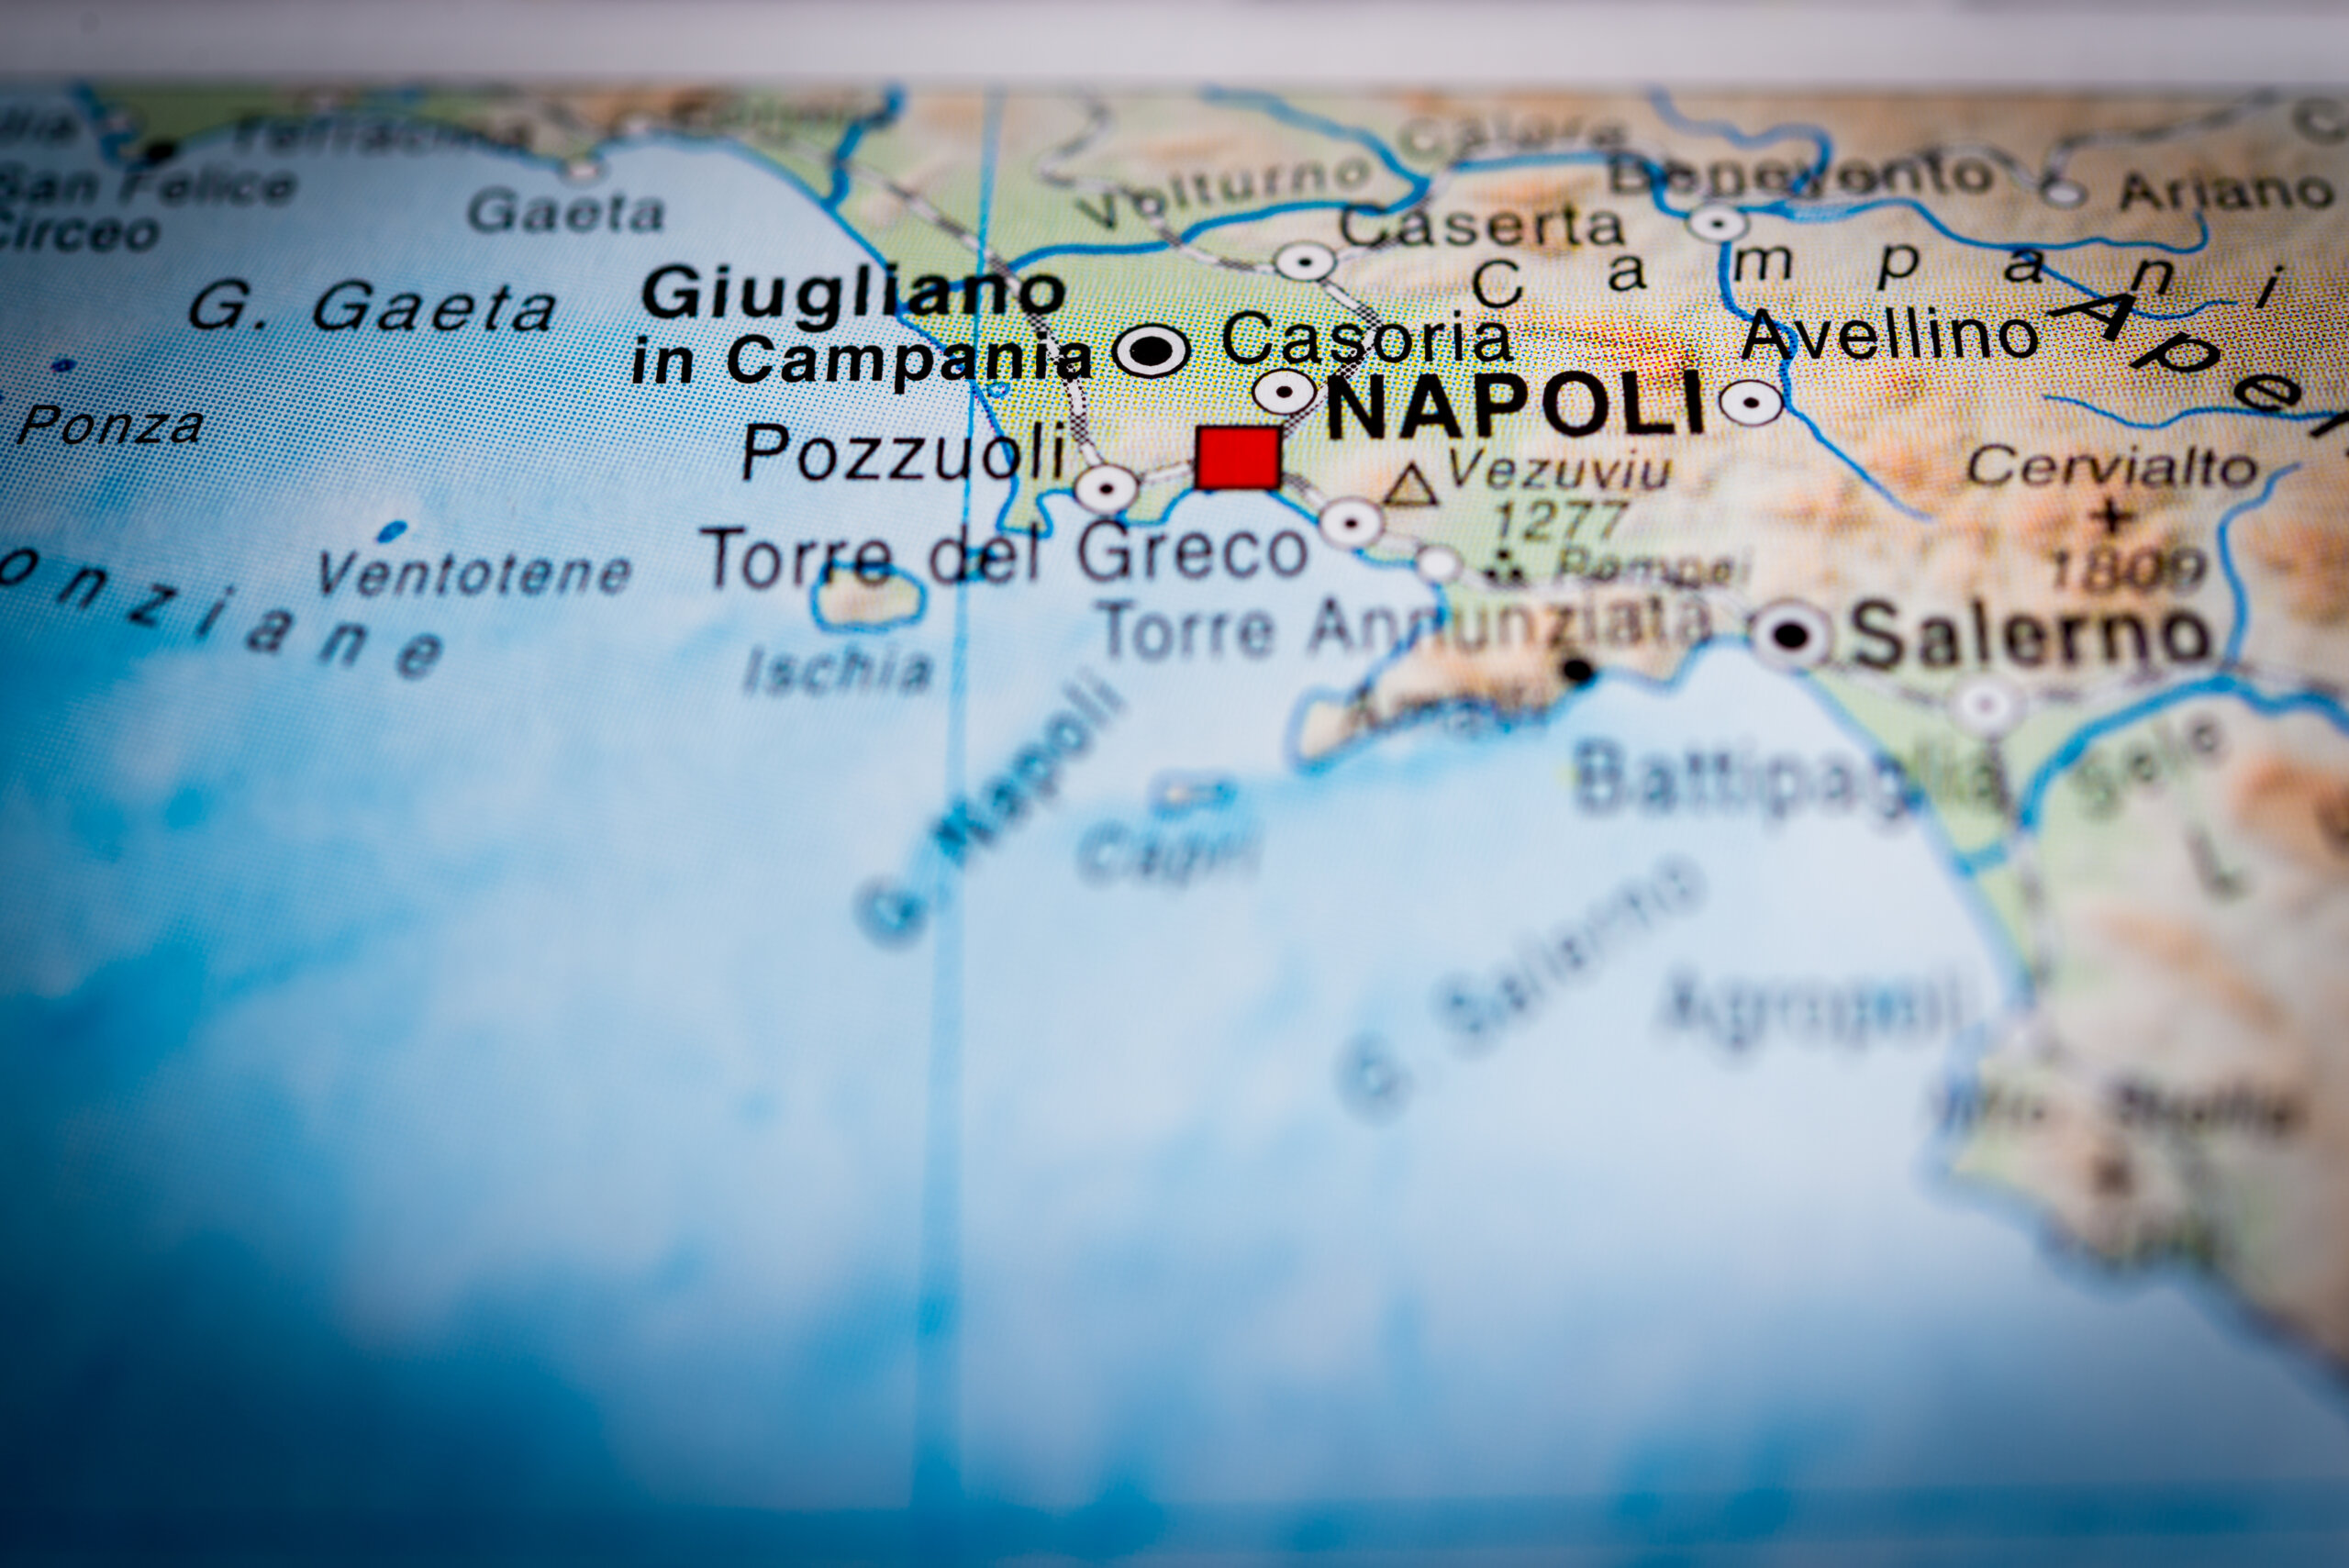 Giugliano, Map view of Napoli, Italy. (vignette)